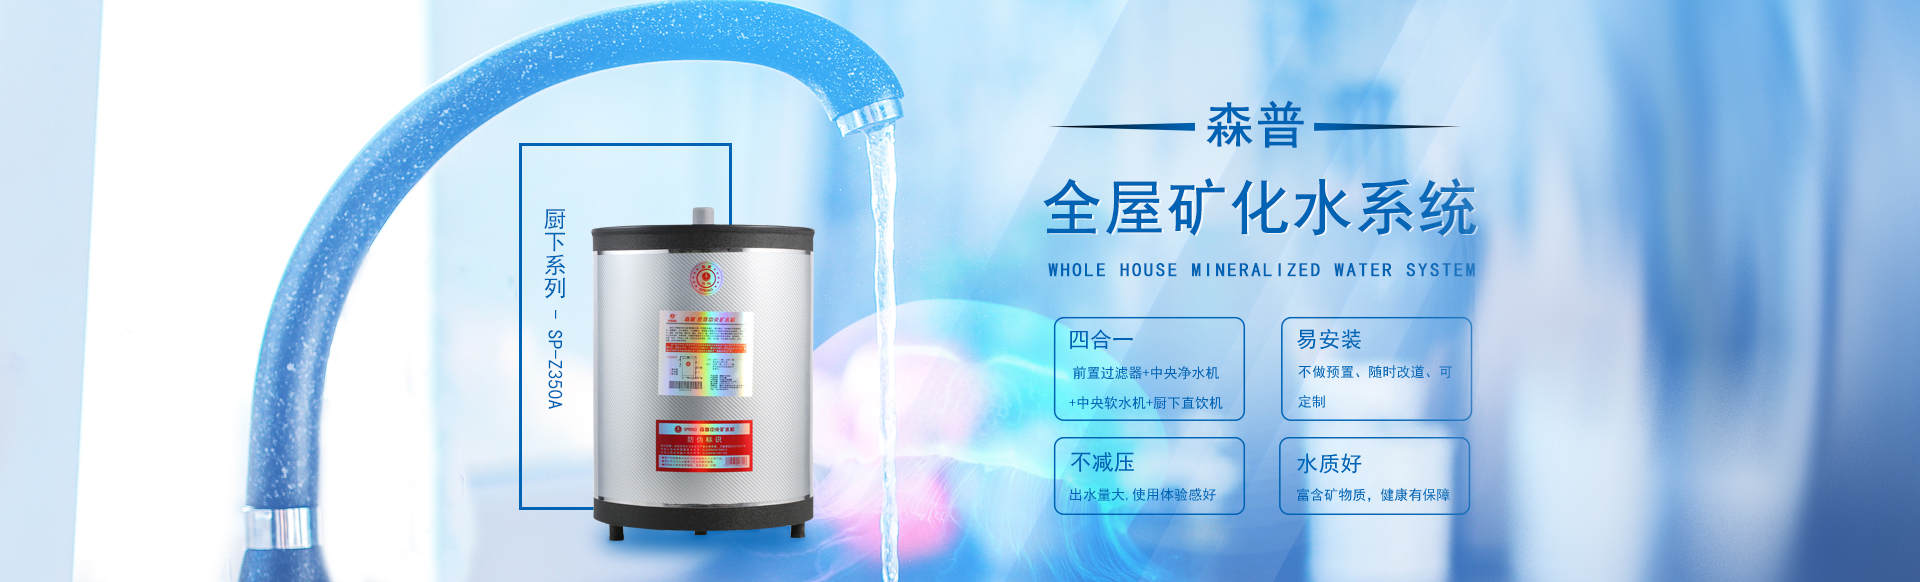 重庆美顿水处理设备有限公司-中央净水器